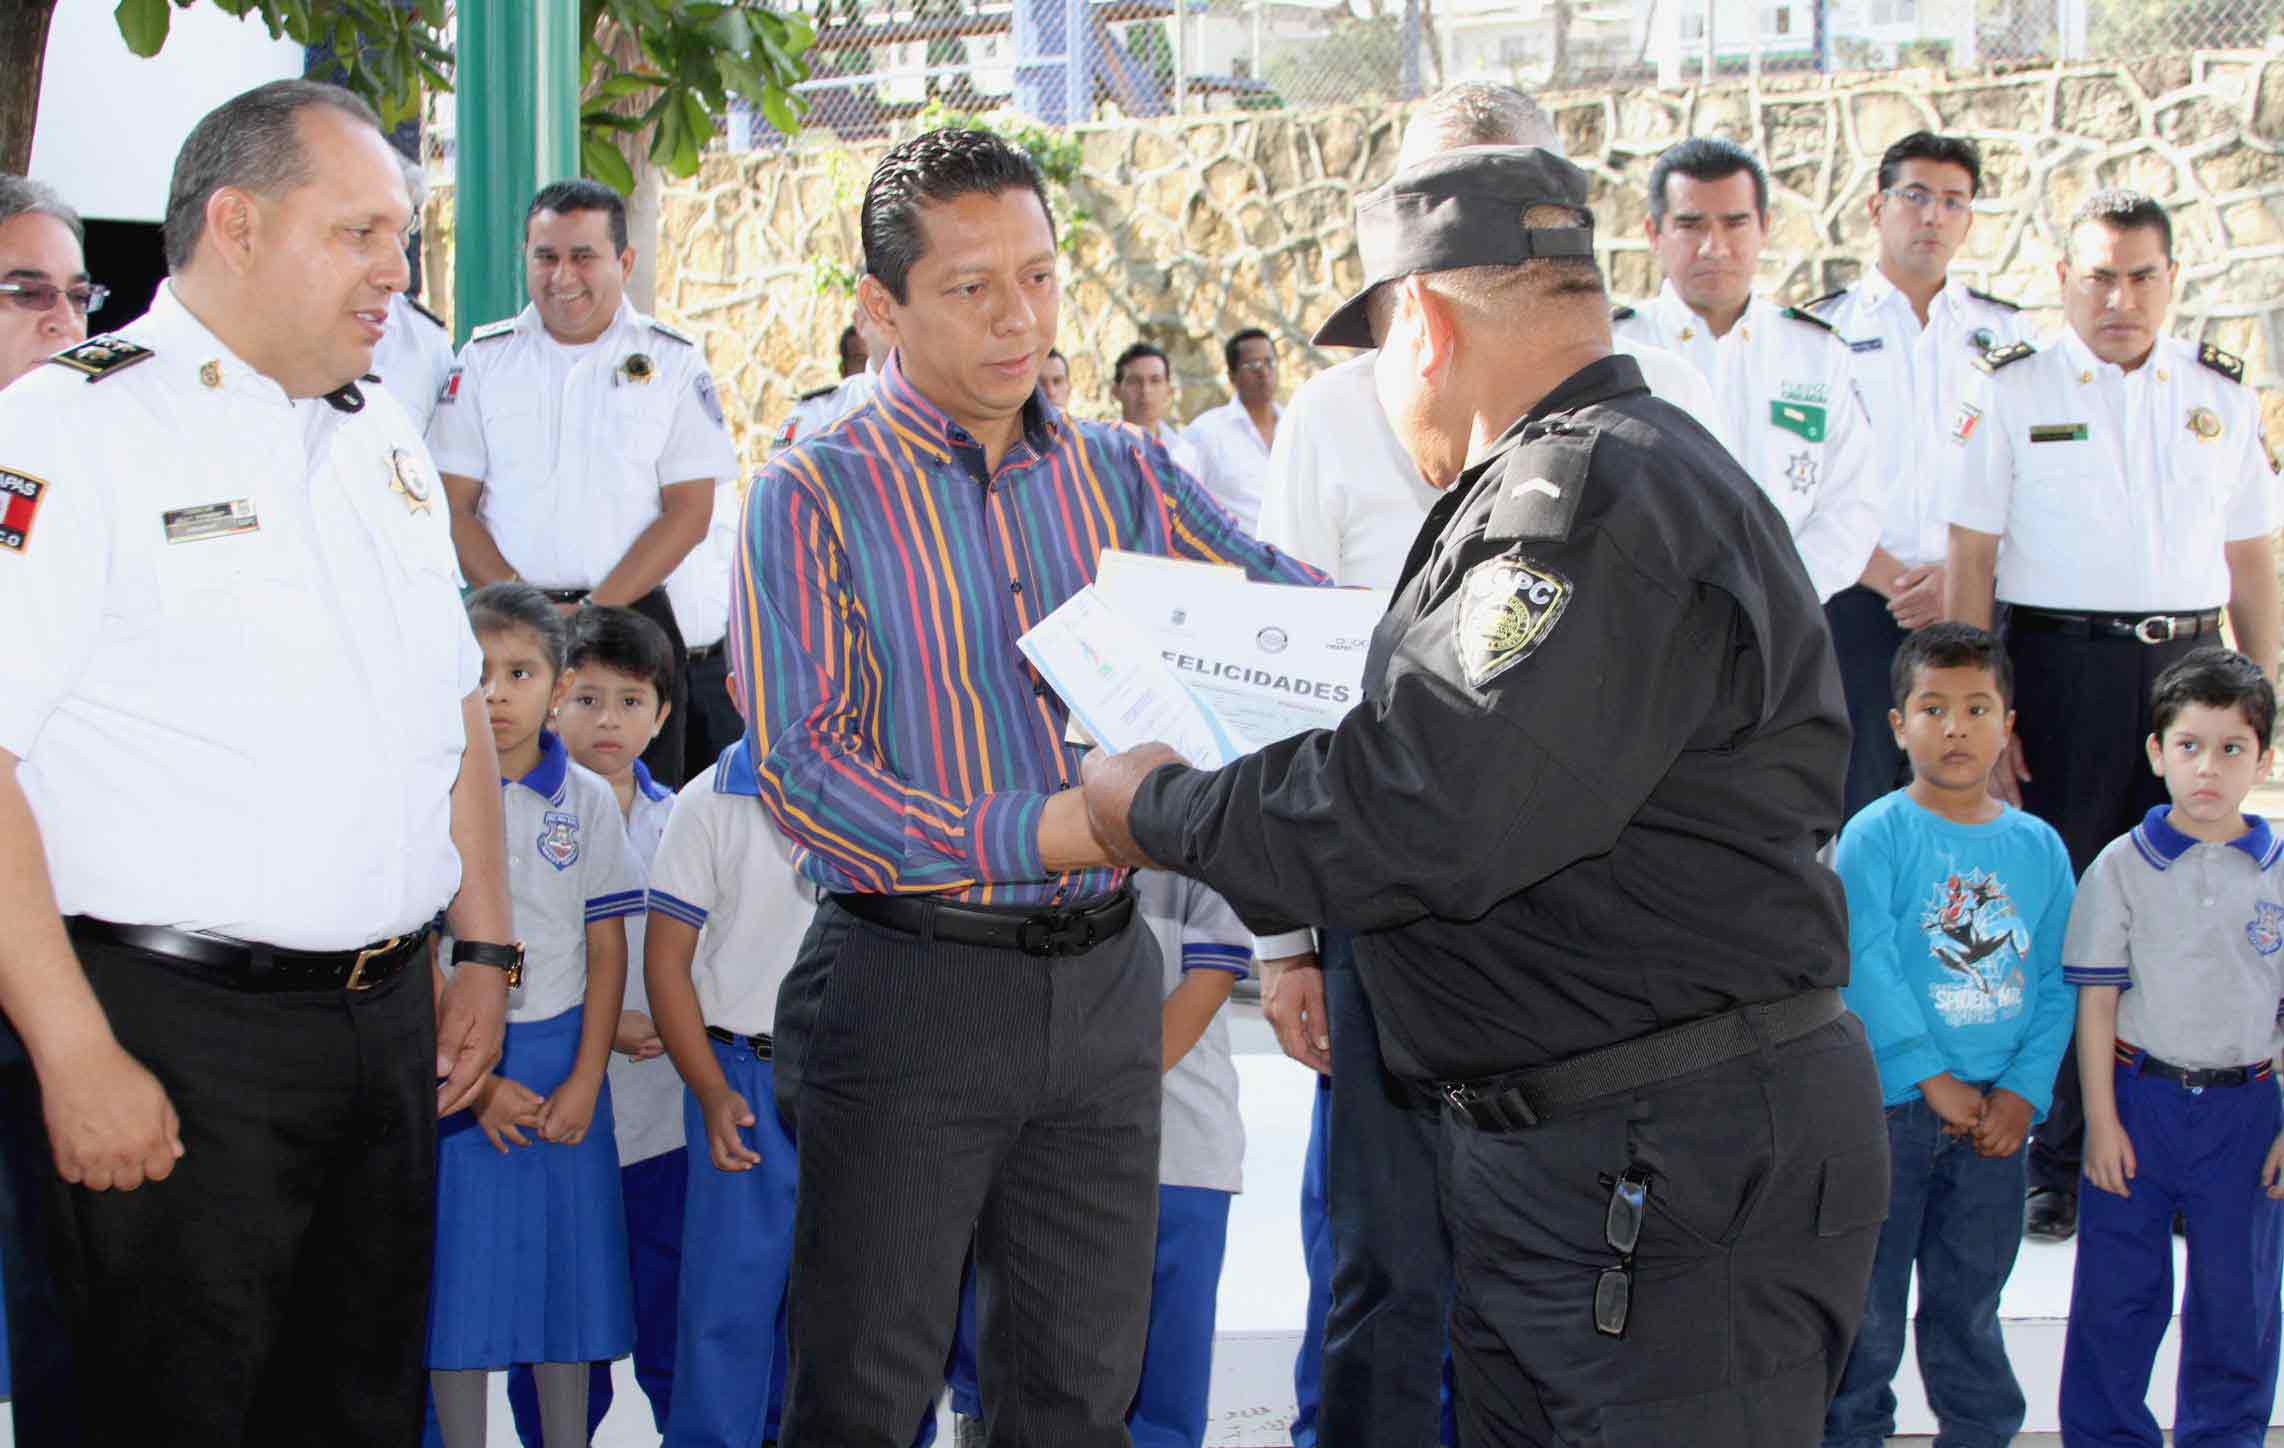 En marcha programa de dignificación policial “Chiapas te reconoce”